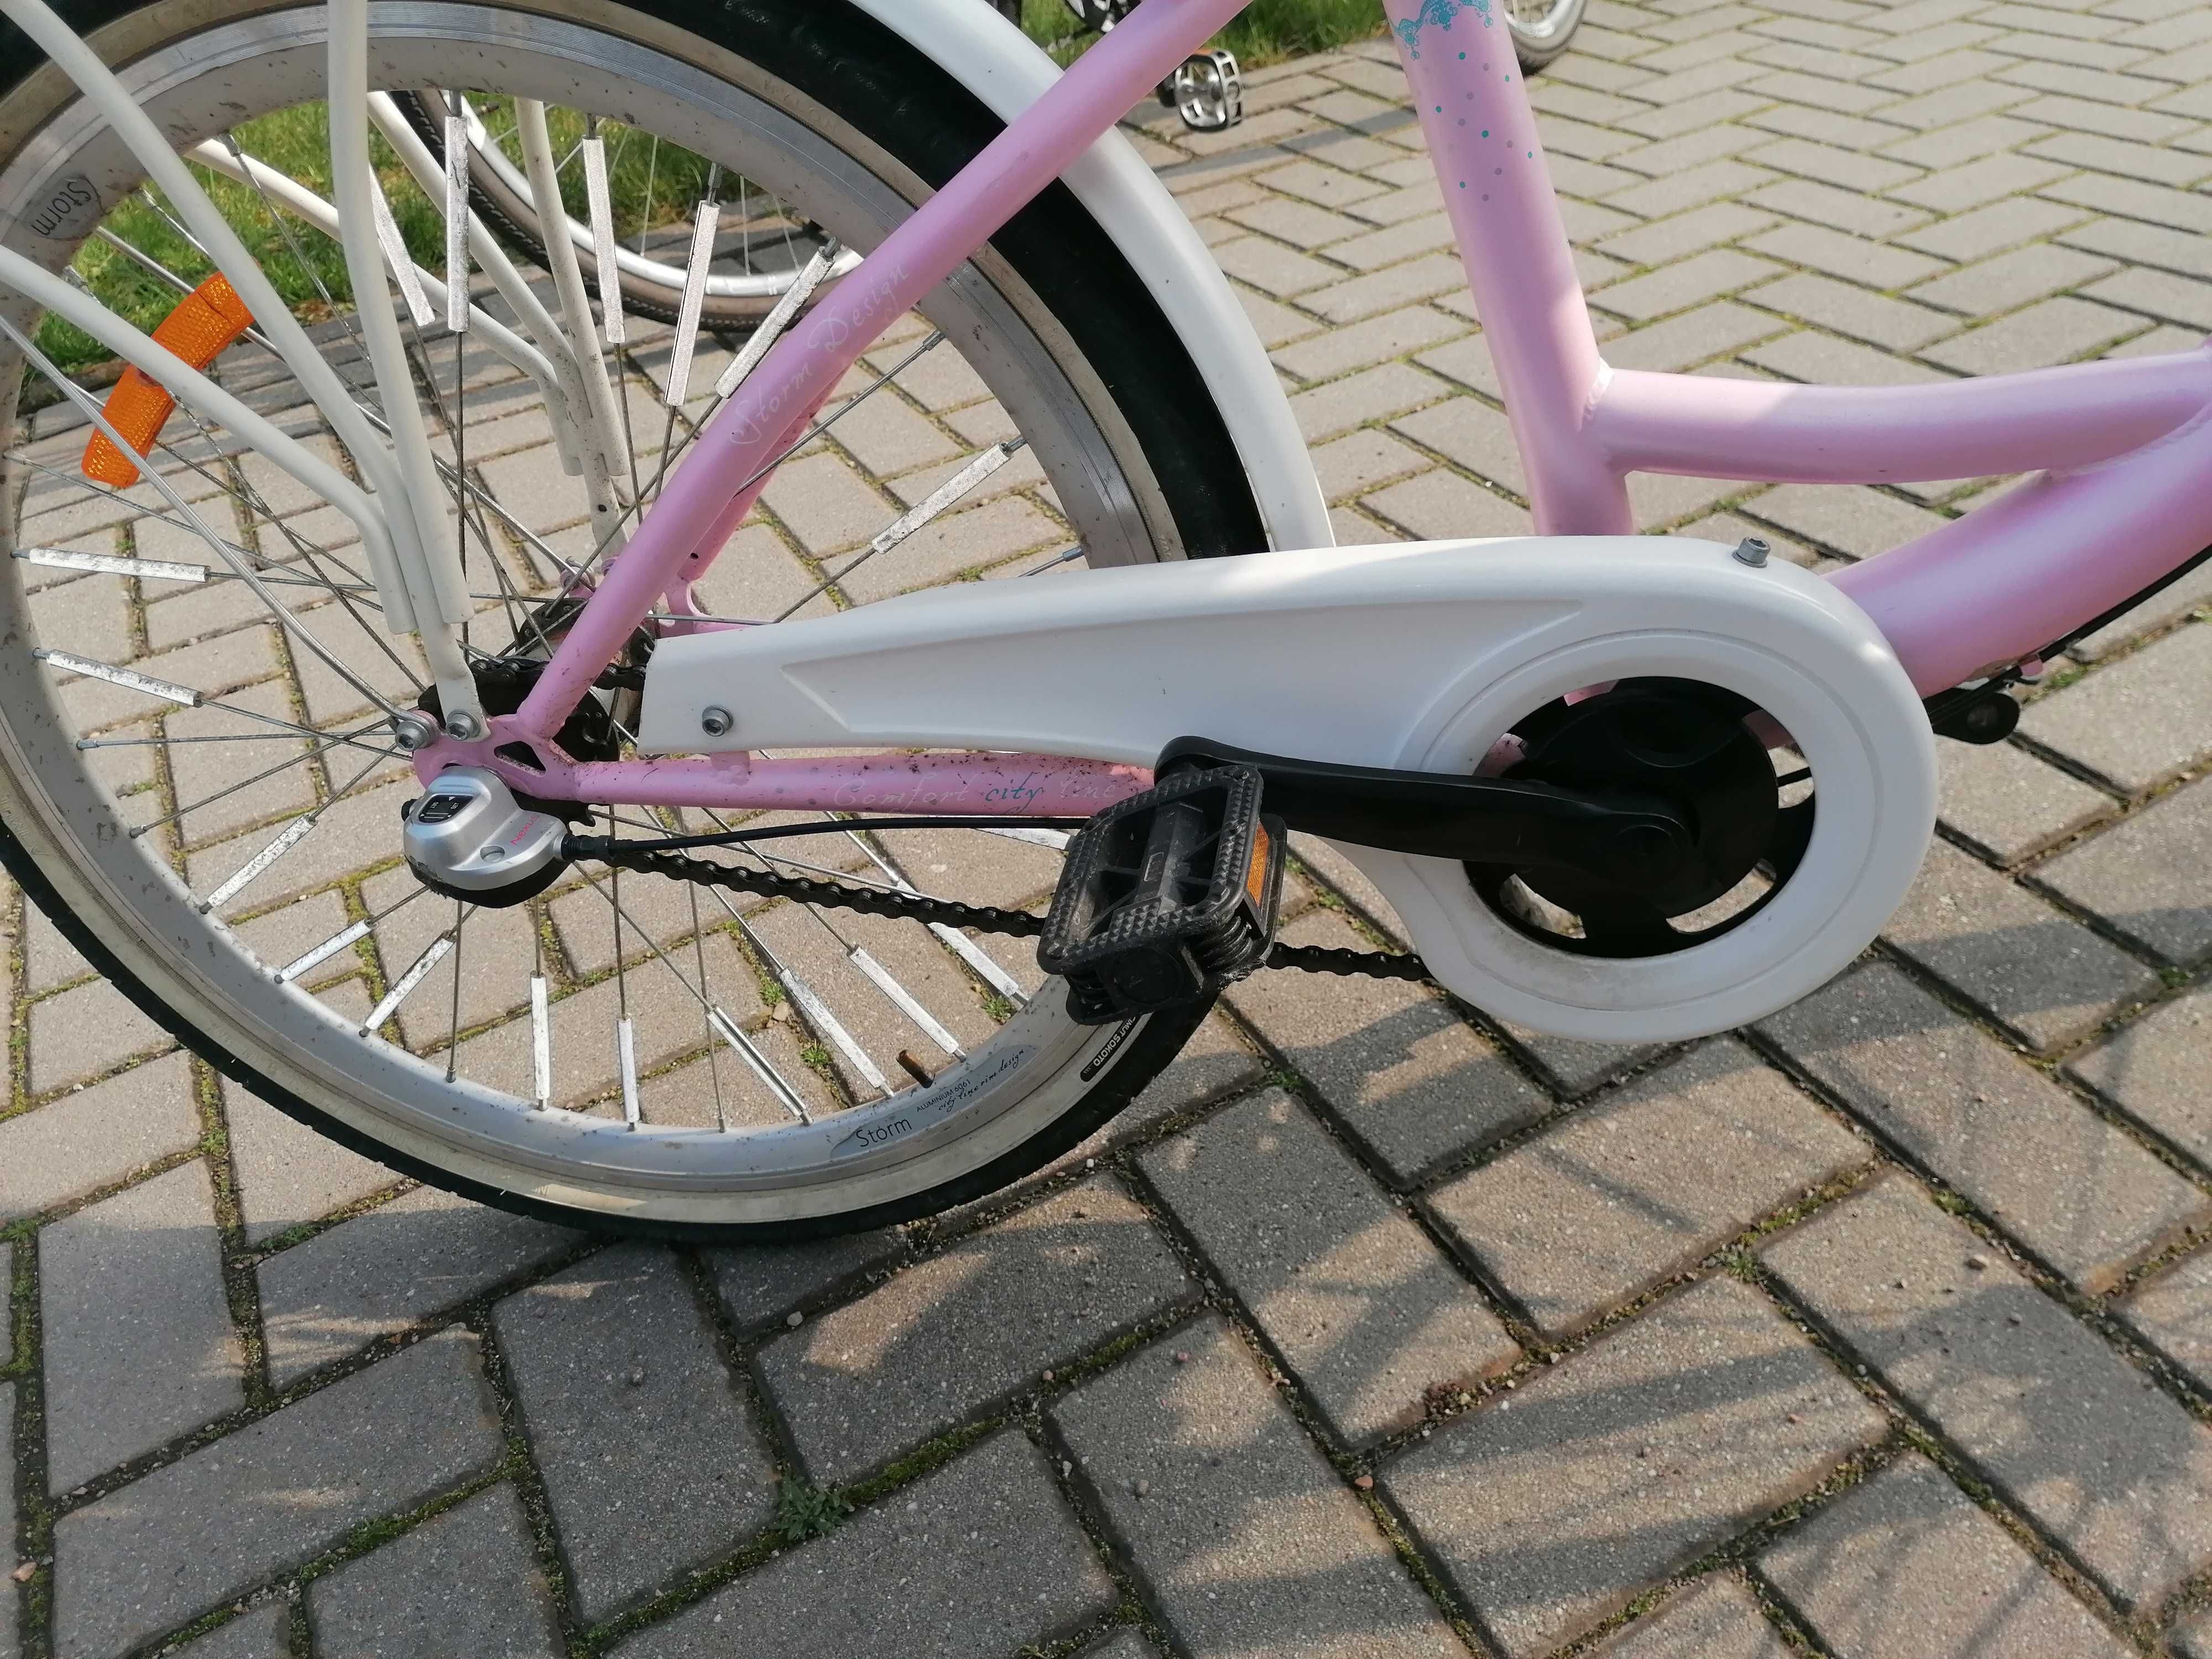 Rower dla dziewczynki 24